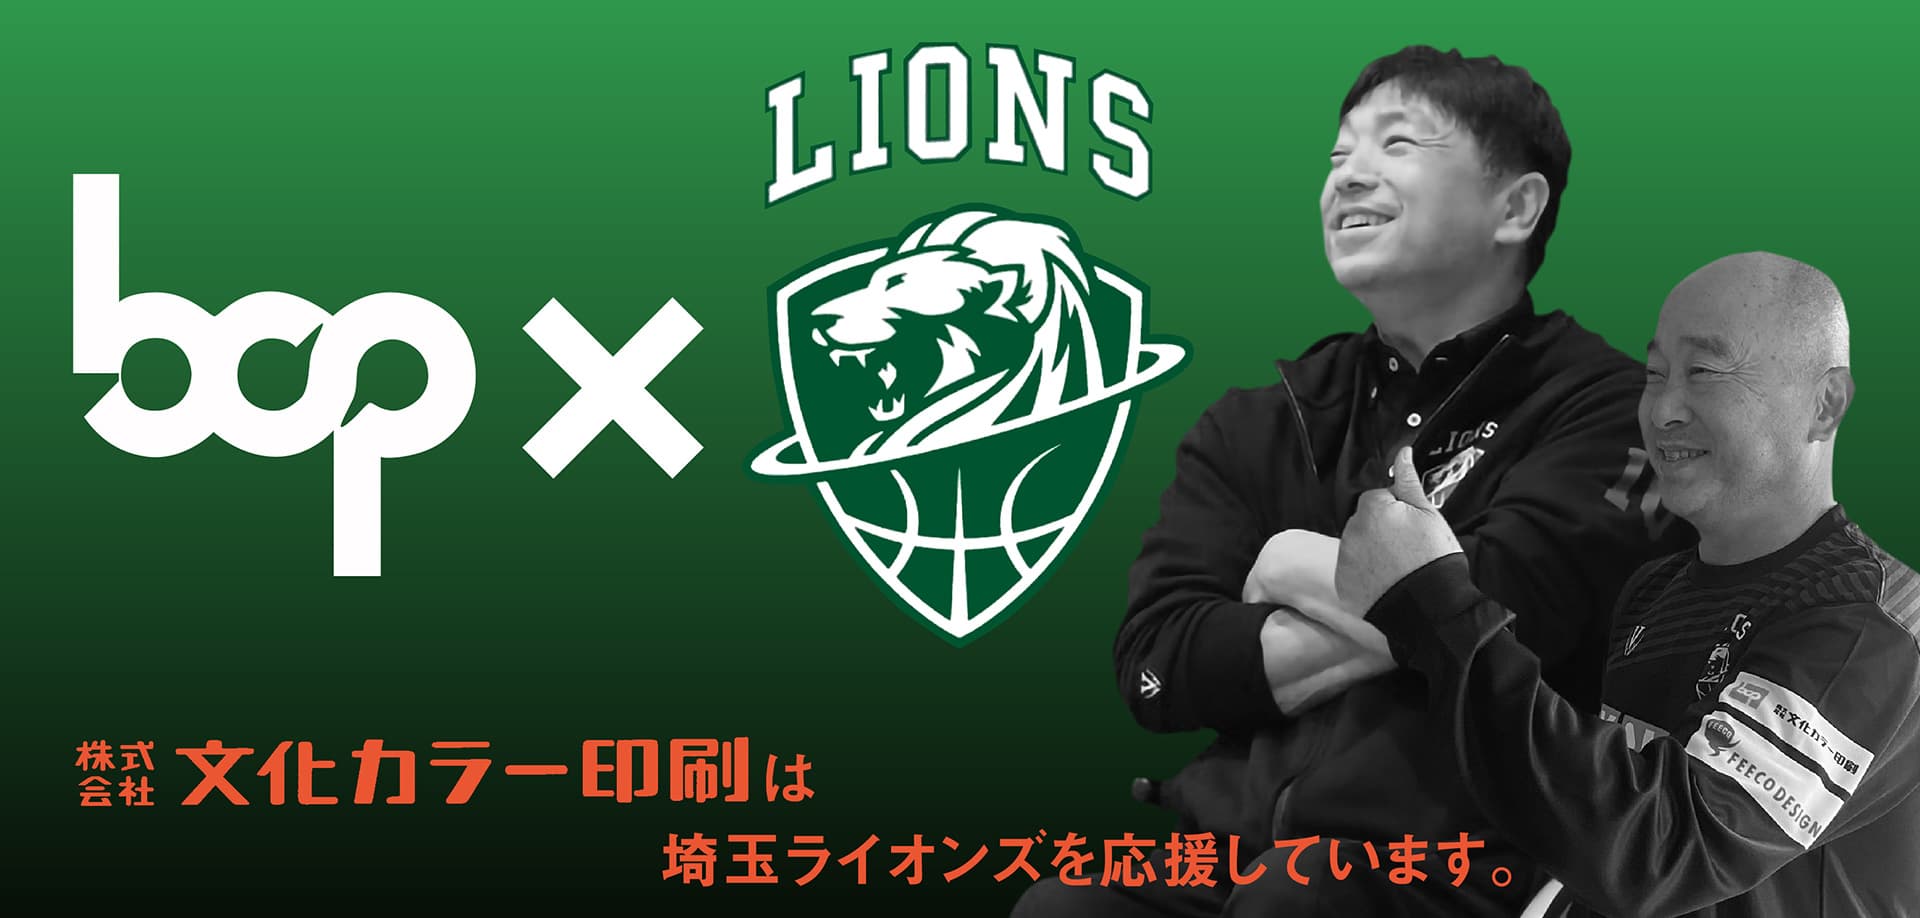 株式会社文化カラー印刷は埼玉ライオンズを応援しています。